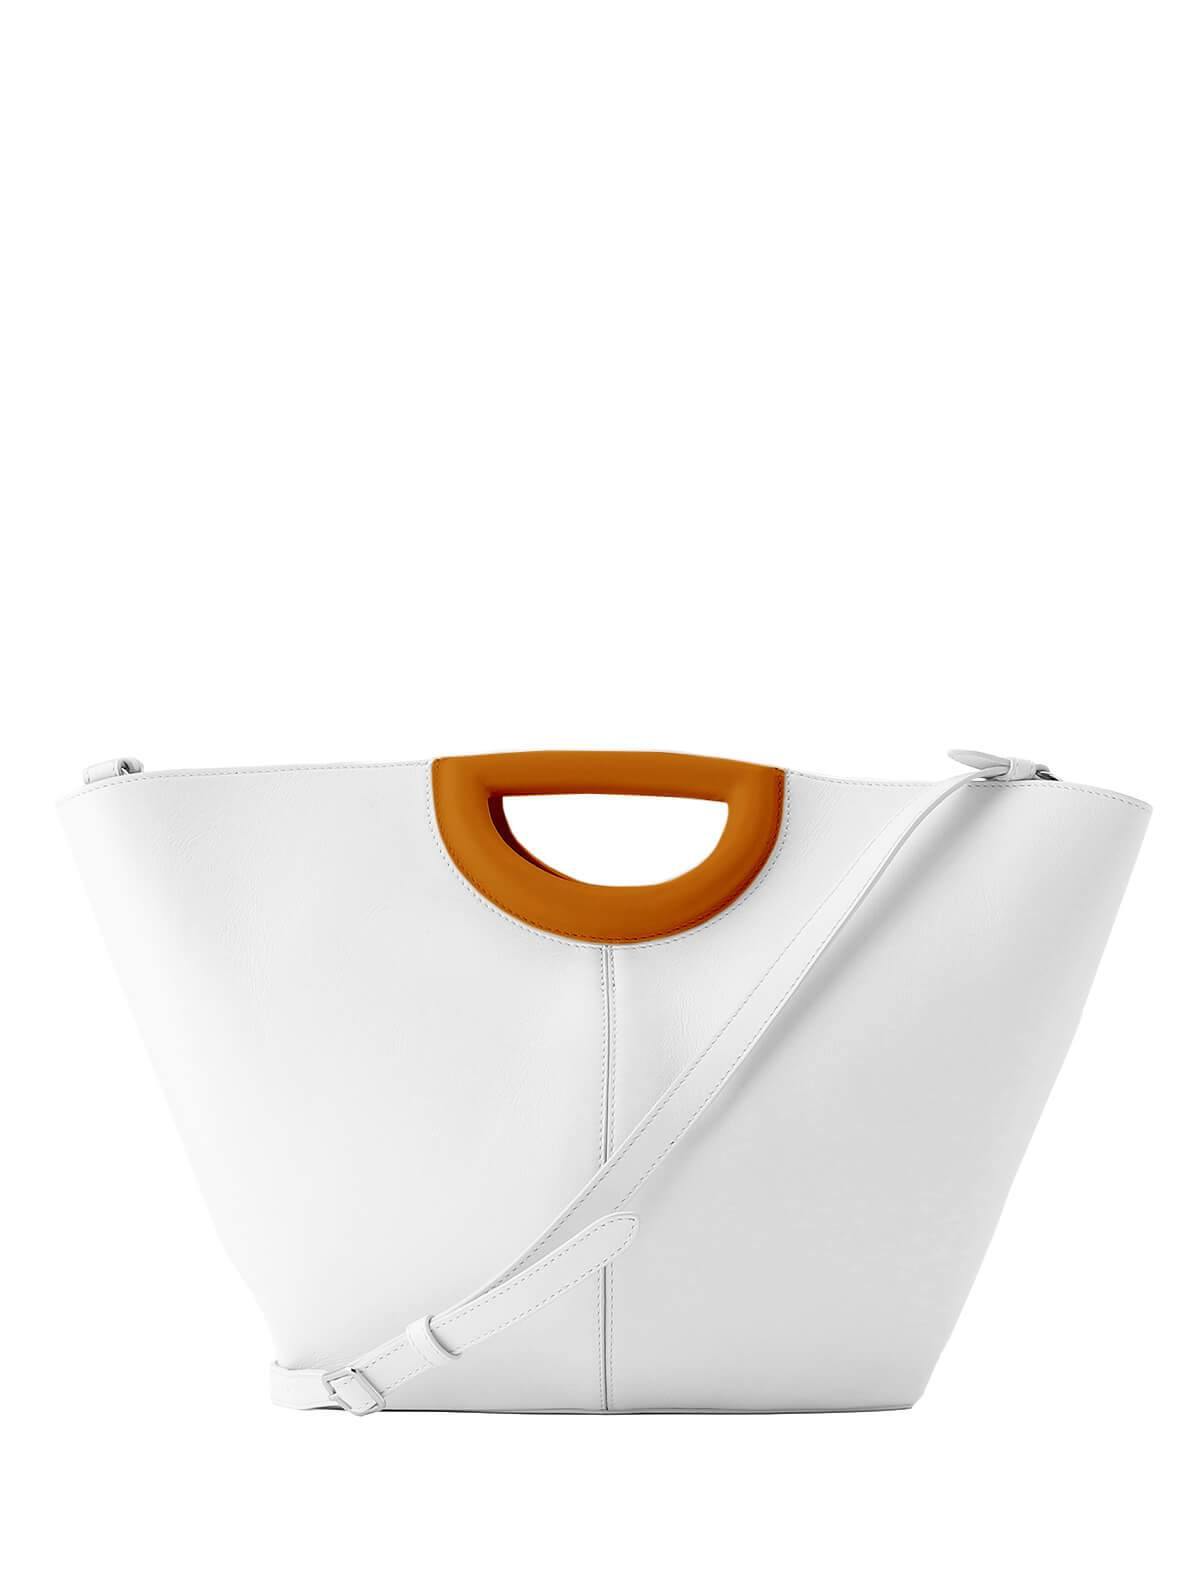 J&M DAVIDSON Medium Market Tote Bag In White/ Brown | CLOSET Singapore